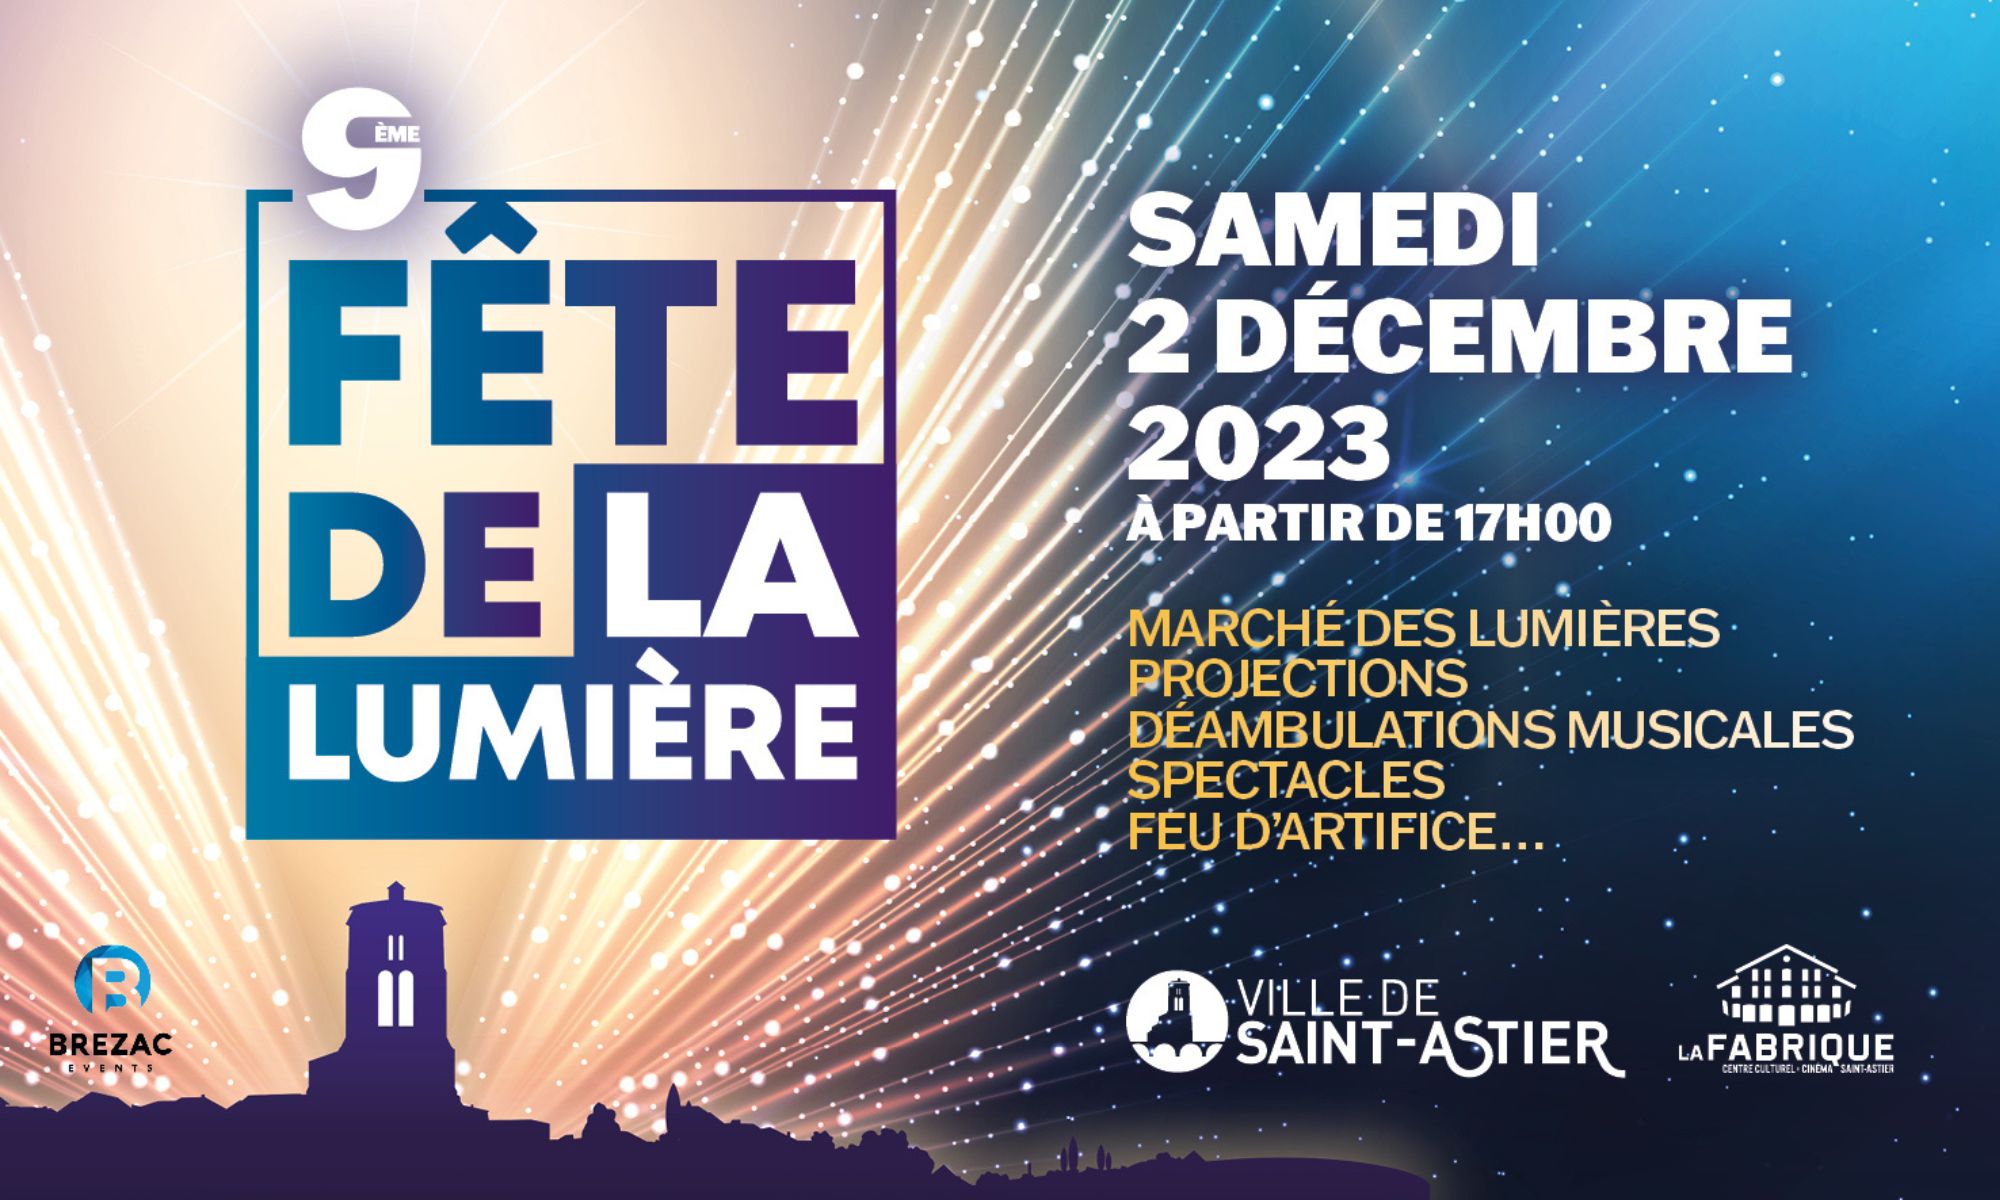 La 9ème Fête de la lumière le 2 décembre 2023 à Saint-Astier - France Bleu